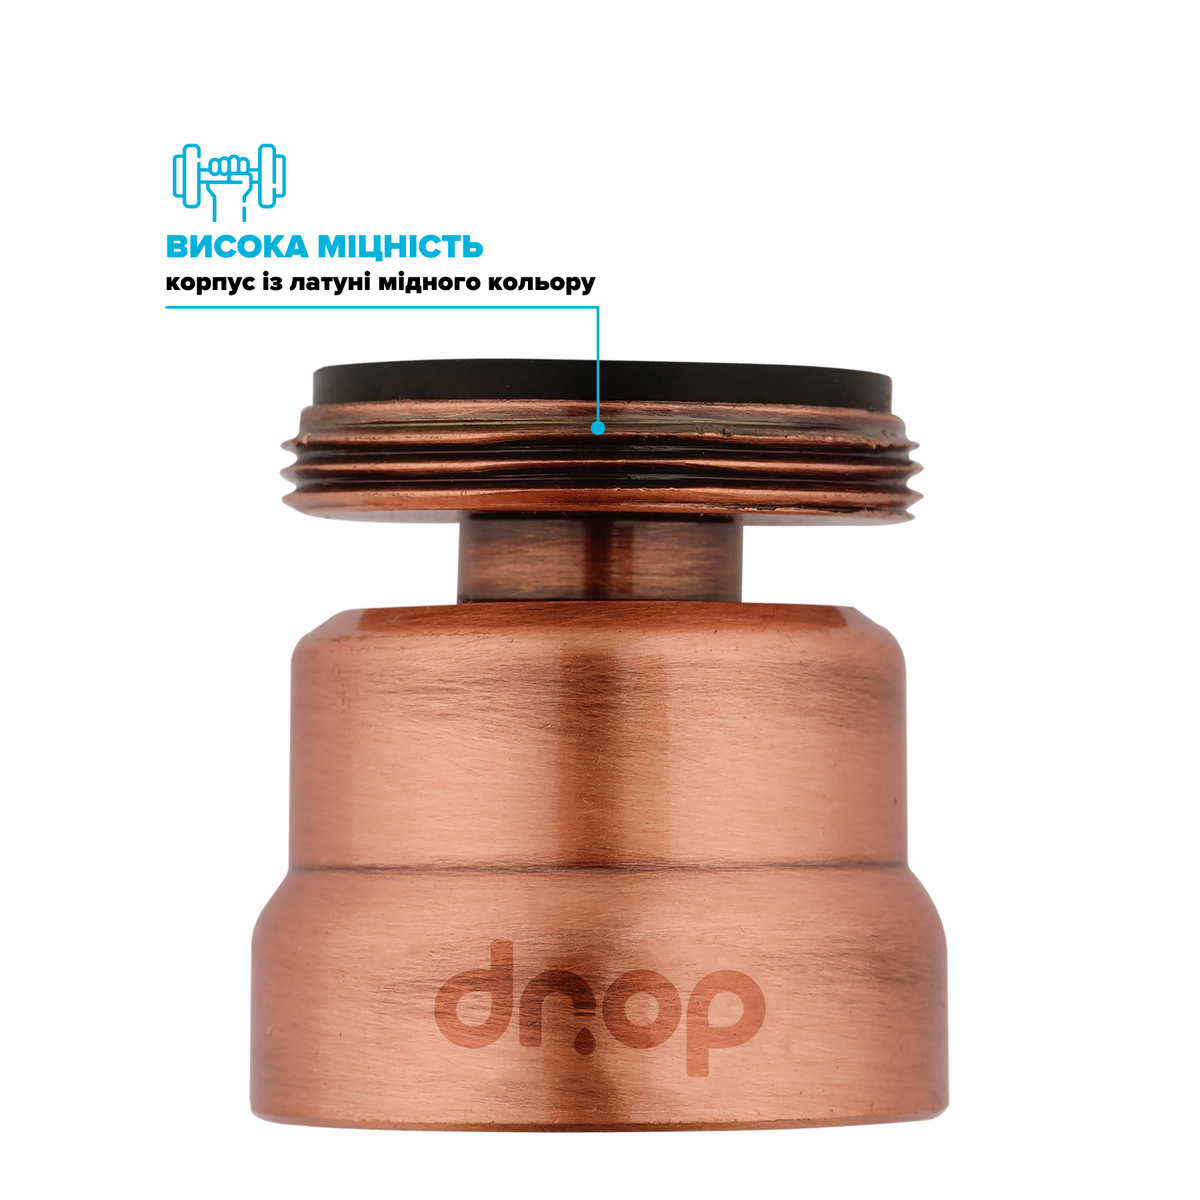 Поворотный 360° адаптер DROP COLOR CL360-CPR внешняя резьба 24 мм угол 15° латунь цвет медь